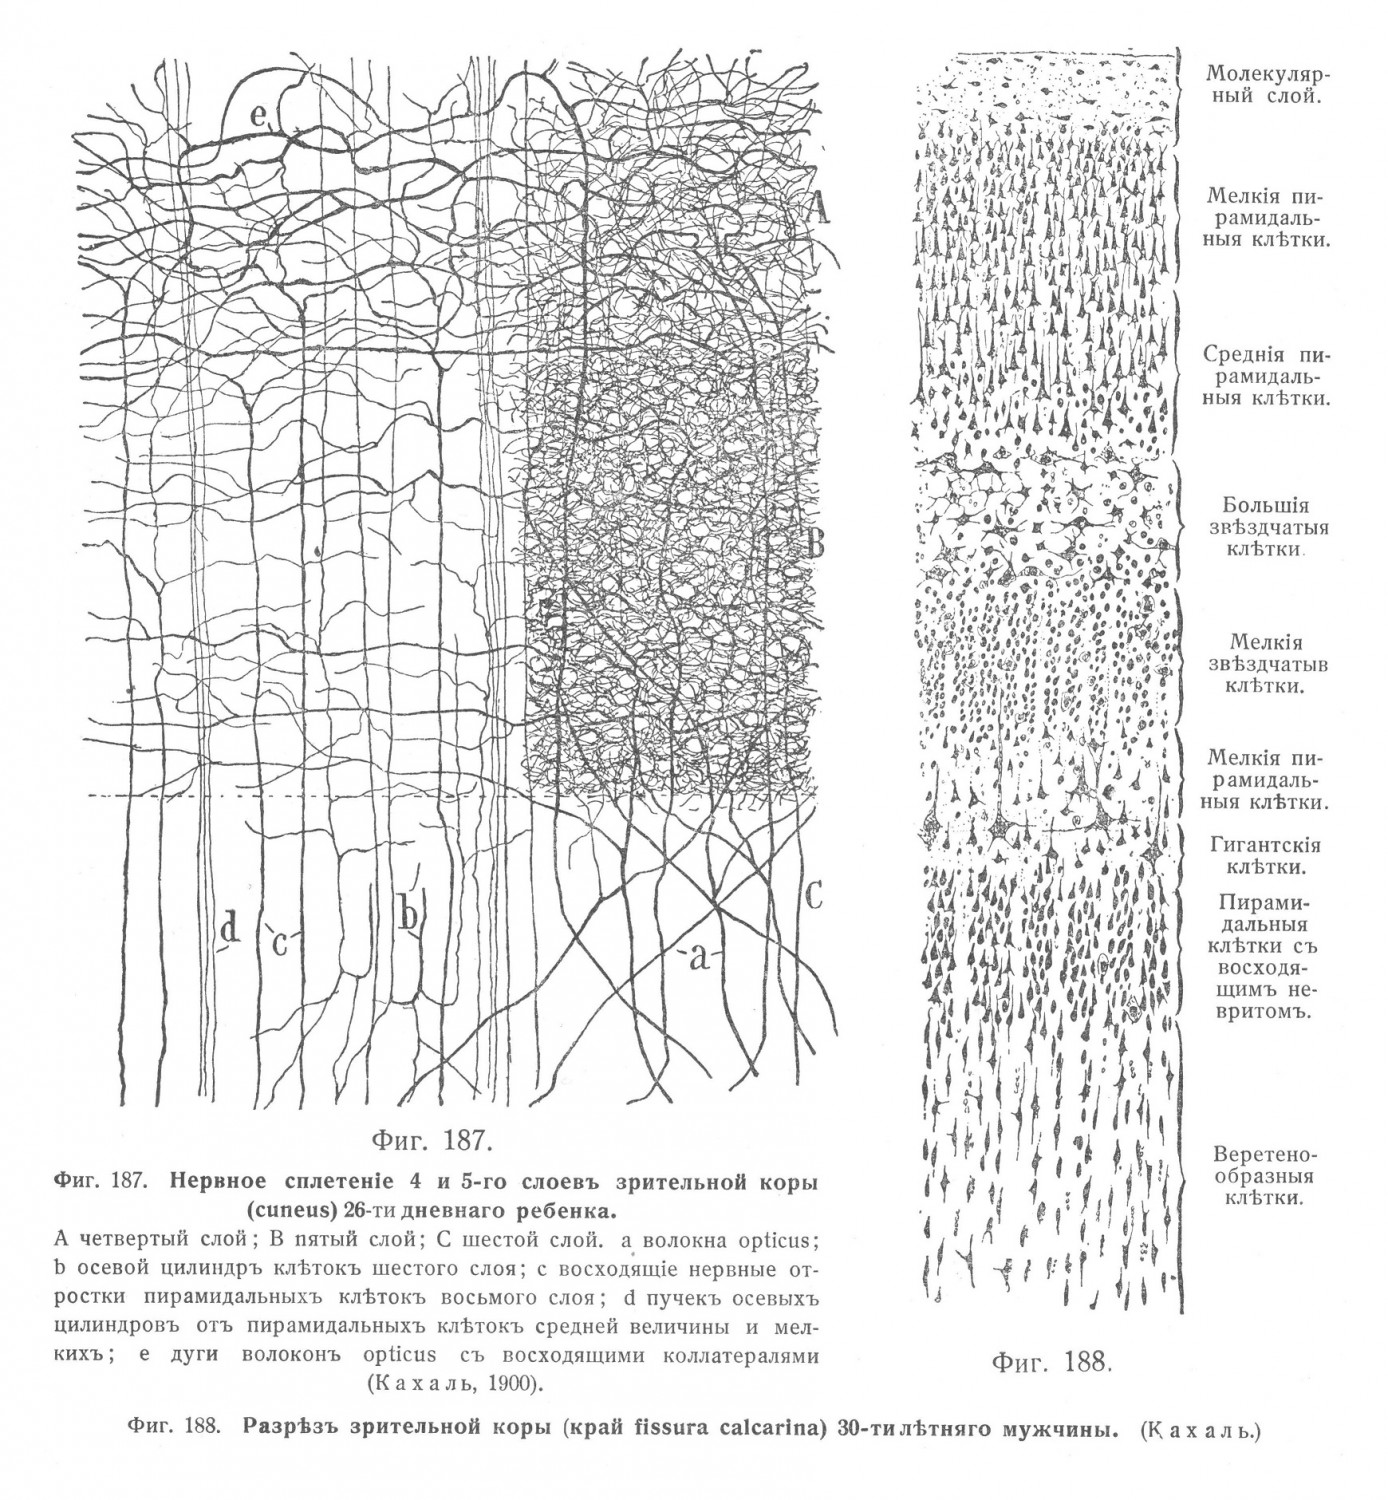 Нервное сплетеніе 4 и 5-го слоевъ зрительной коры (cuneus)